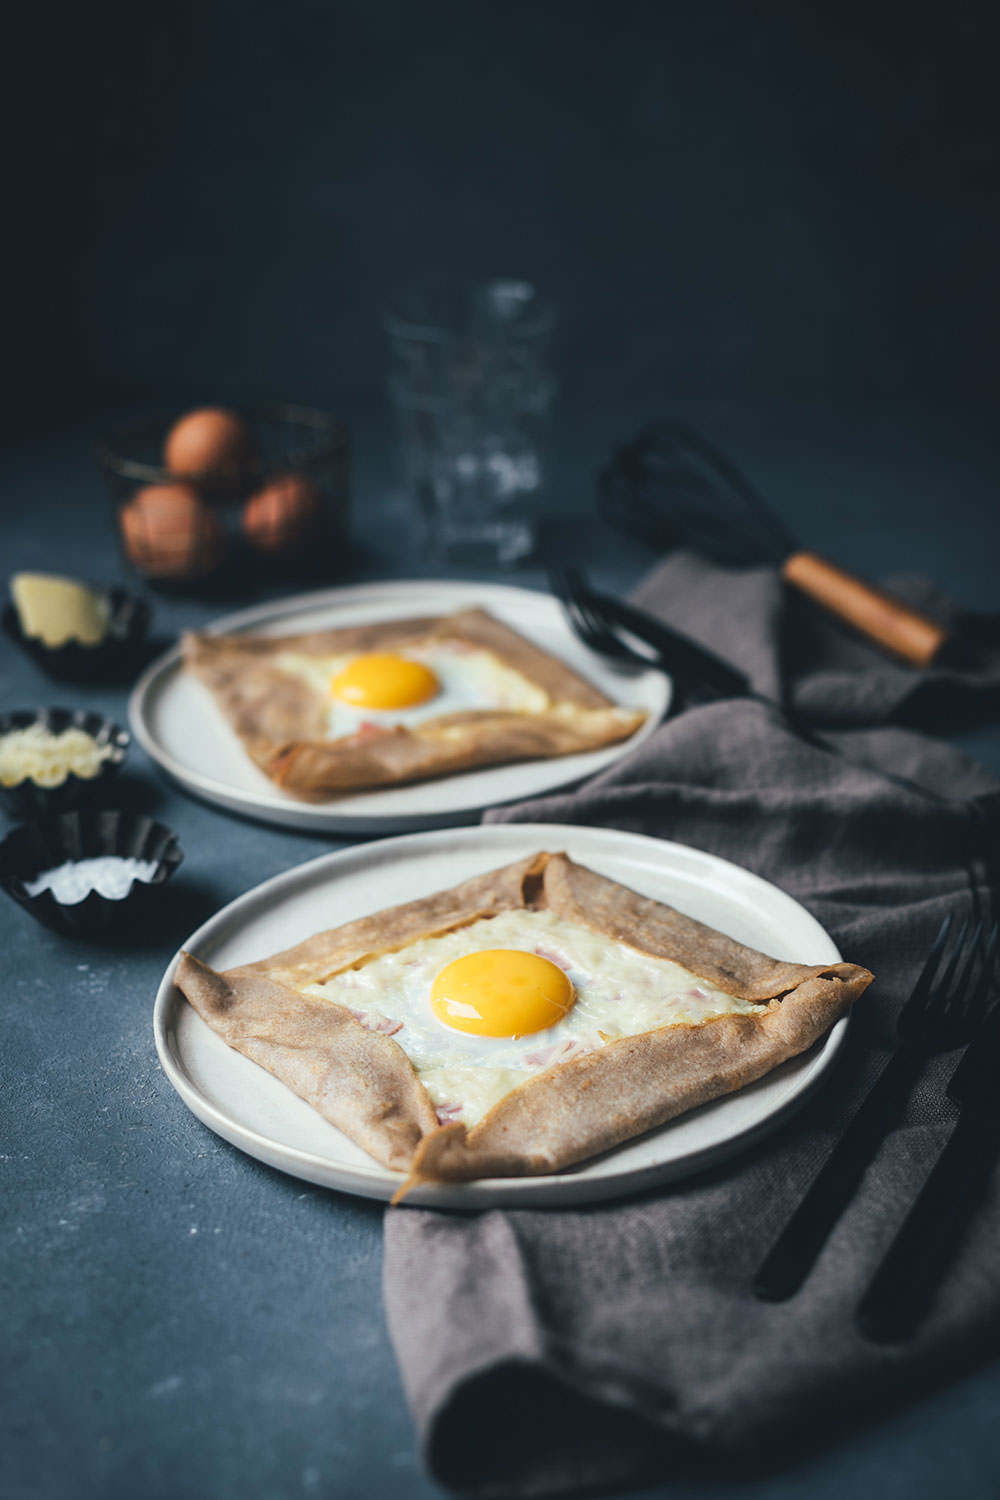 Rezept für klassische Galettes, wie man sie aus der Bretagne kennt. Galette Complète ist ein bretonischer Buchweizenpfannkuchen, der mit Kochschinken, geriebenem Emmentaler und einem Spiegelei serviert wird | moeyskitchen.com #galette #galettes #buchweizenpfannkuchen #rezepte #galettecomplete #französischeküche #foodblogger #bretagne #crepe